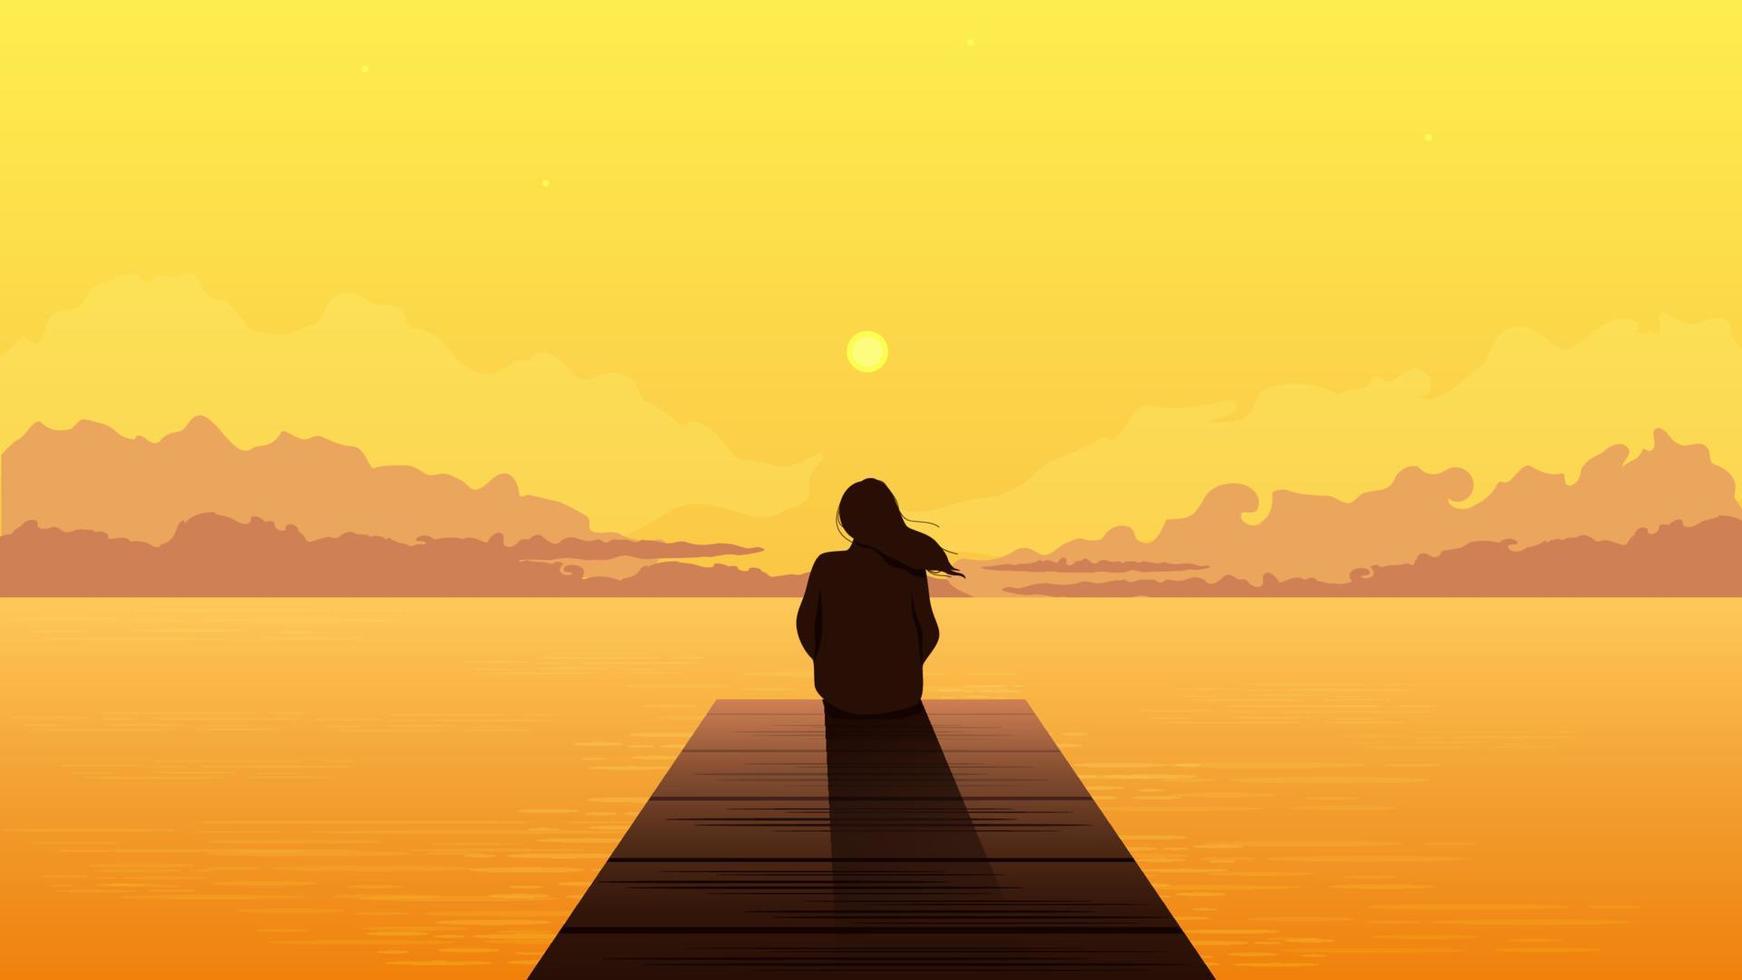 eenzaam meisje silhouet op zonsondergang. triest alleen dromerige vrouw zitten kijken naar oranje zonsondergang tussen wolken op zee pier illustratie persoon eenzaamheid peinzende vector depressie.